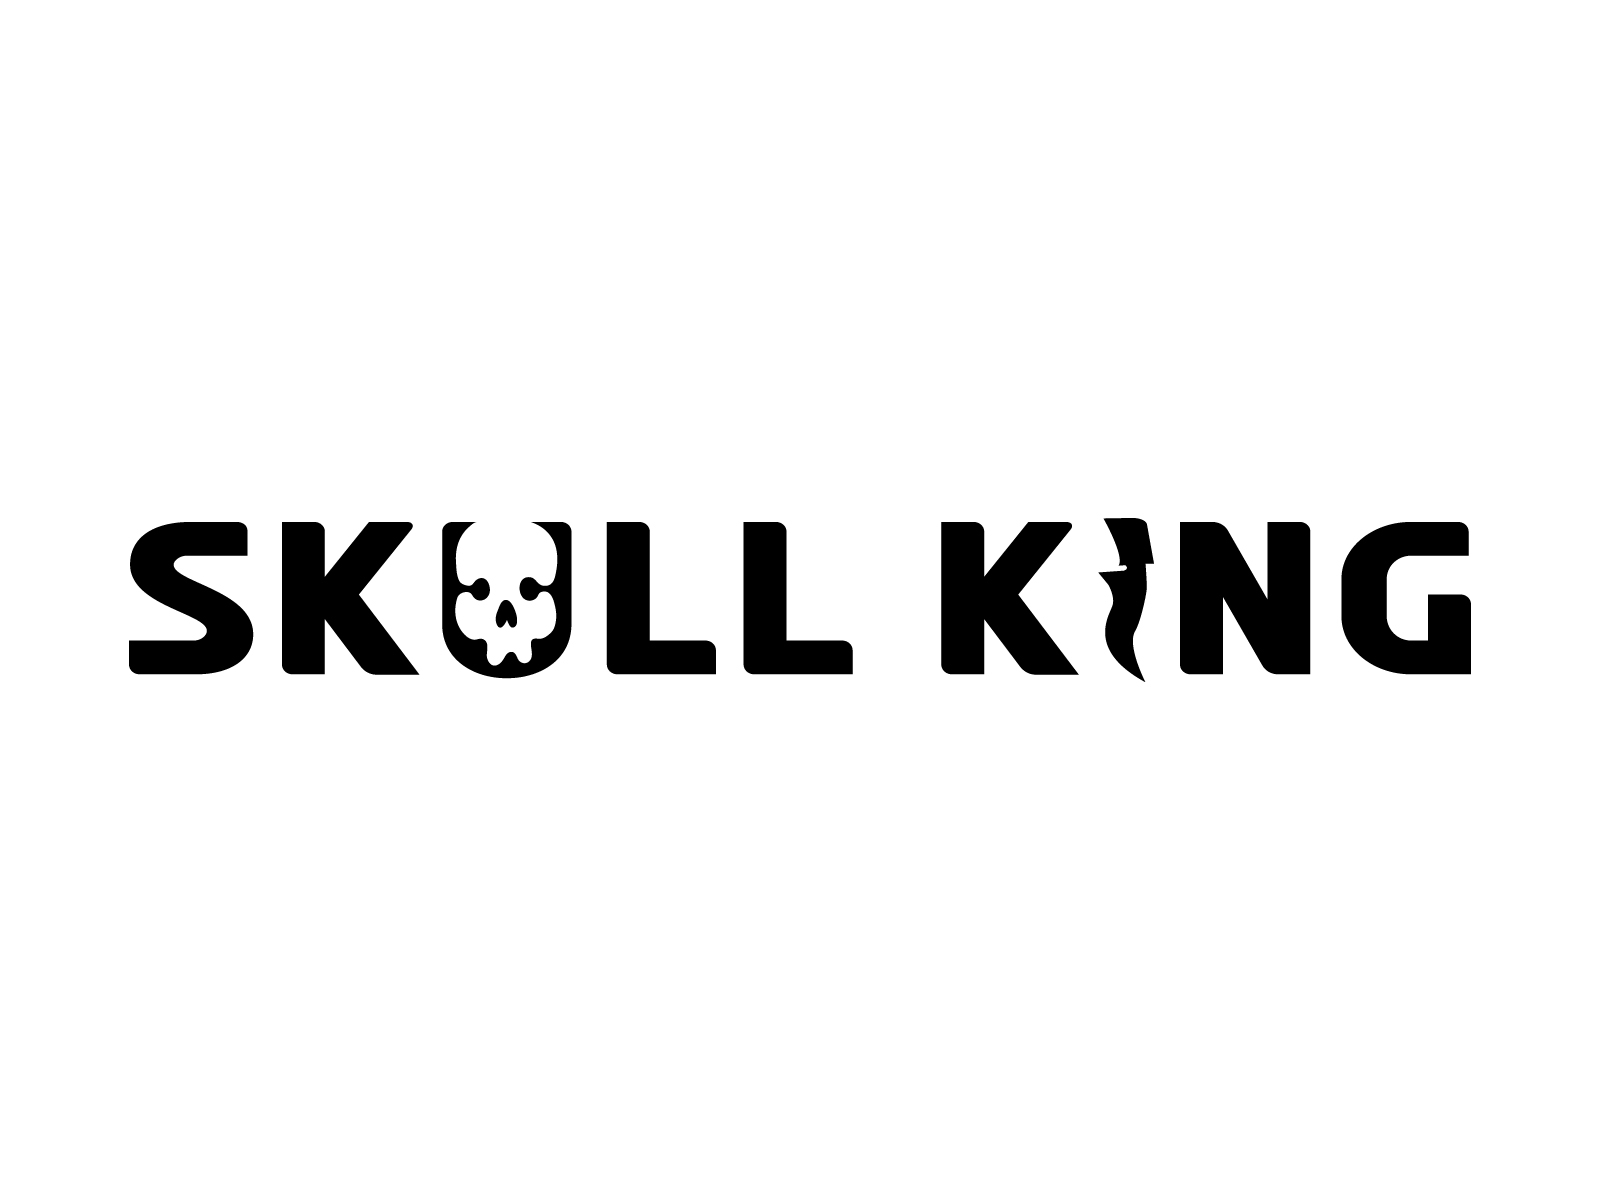 Skull King Logo by Skull King on Dribbble